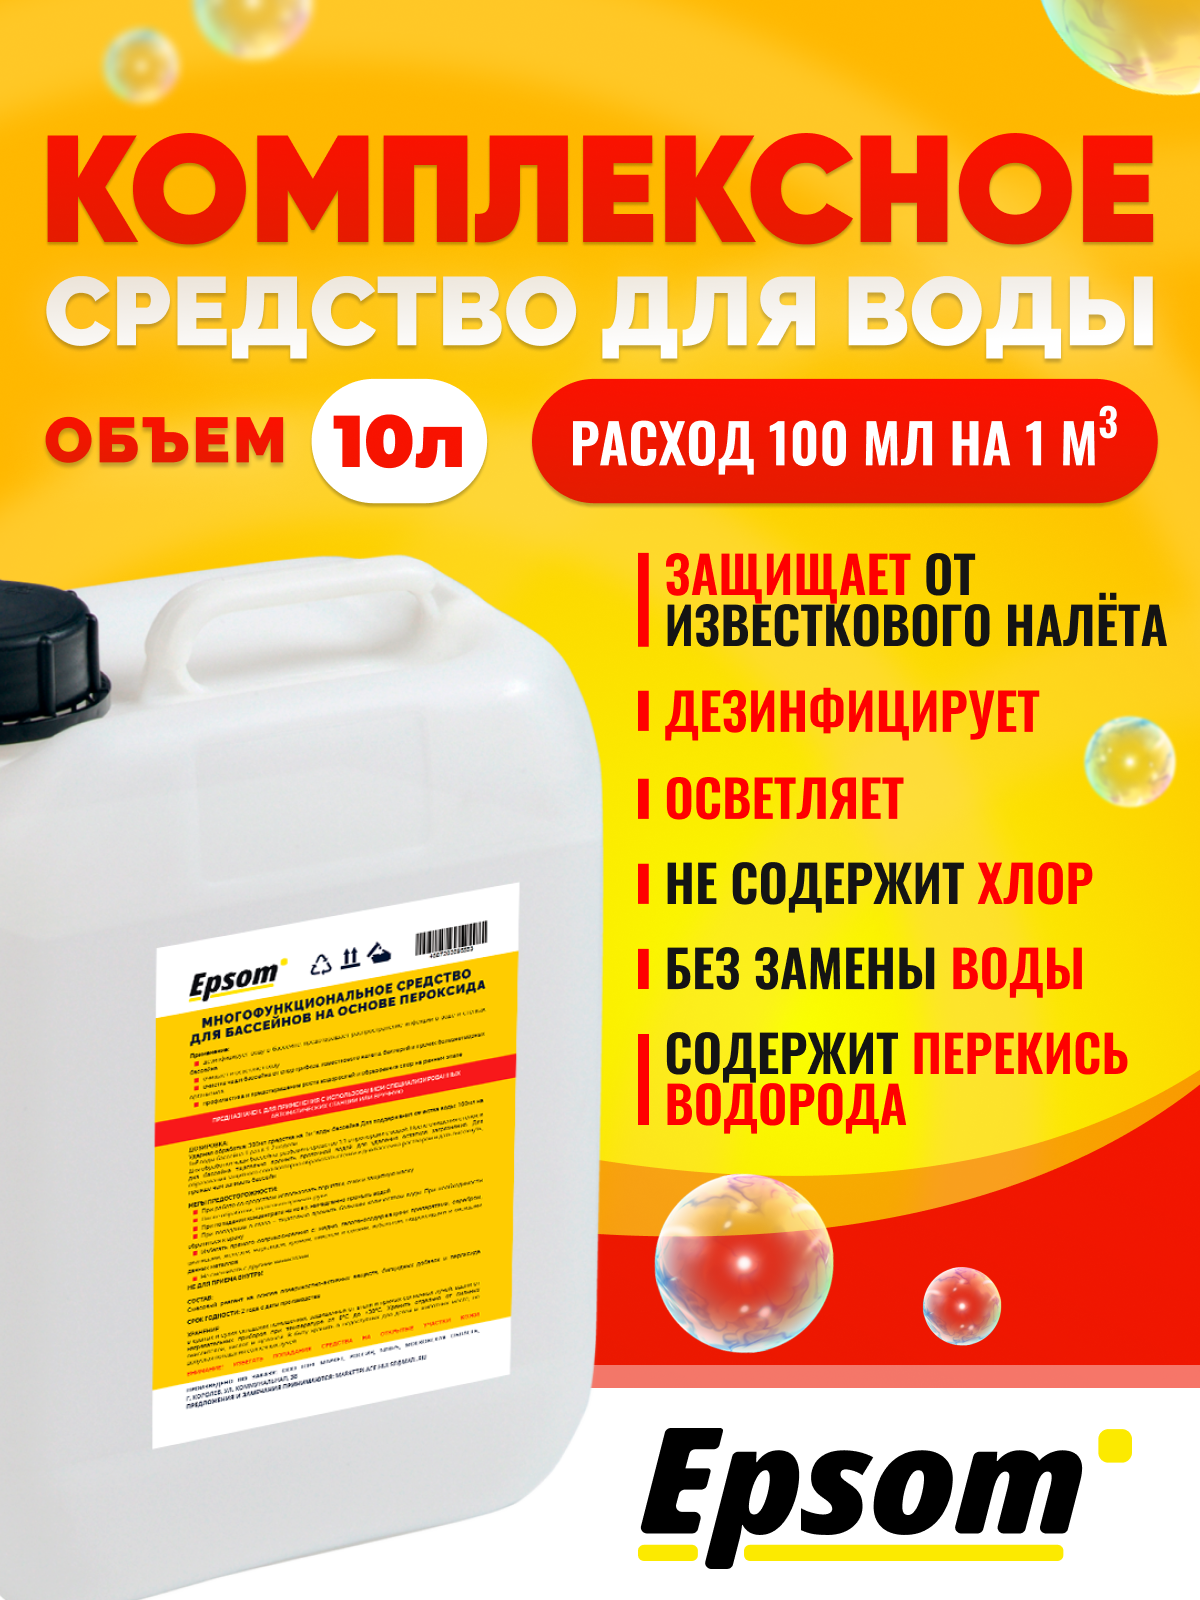 Химия для бассейна Epsom  Epsom-5in1-10 10 л